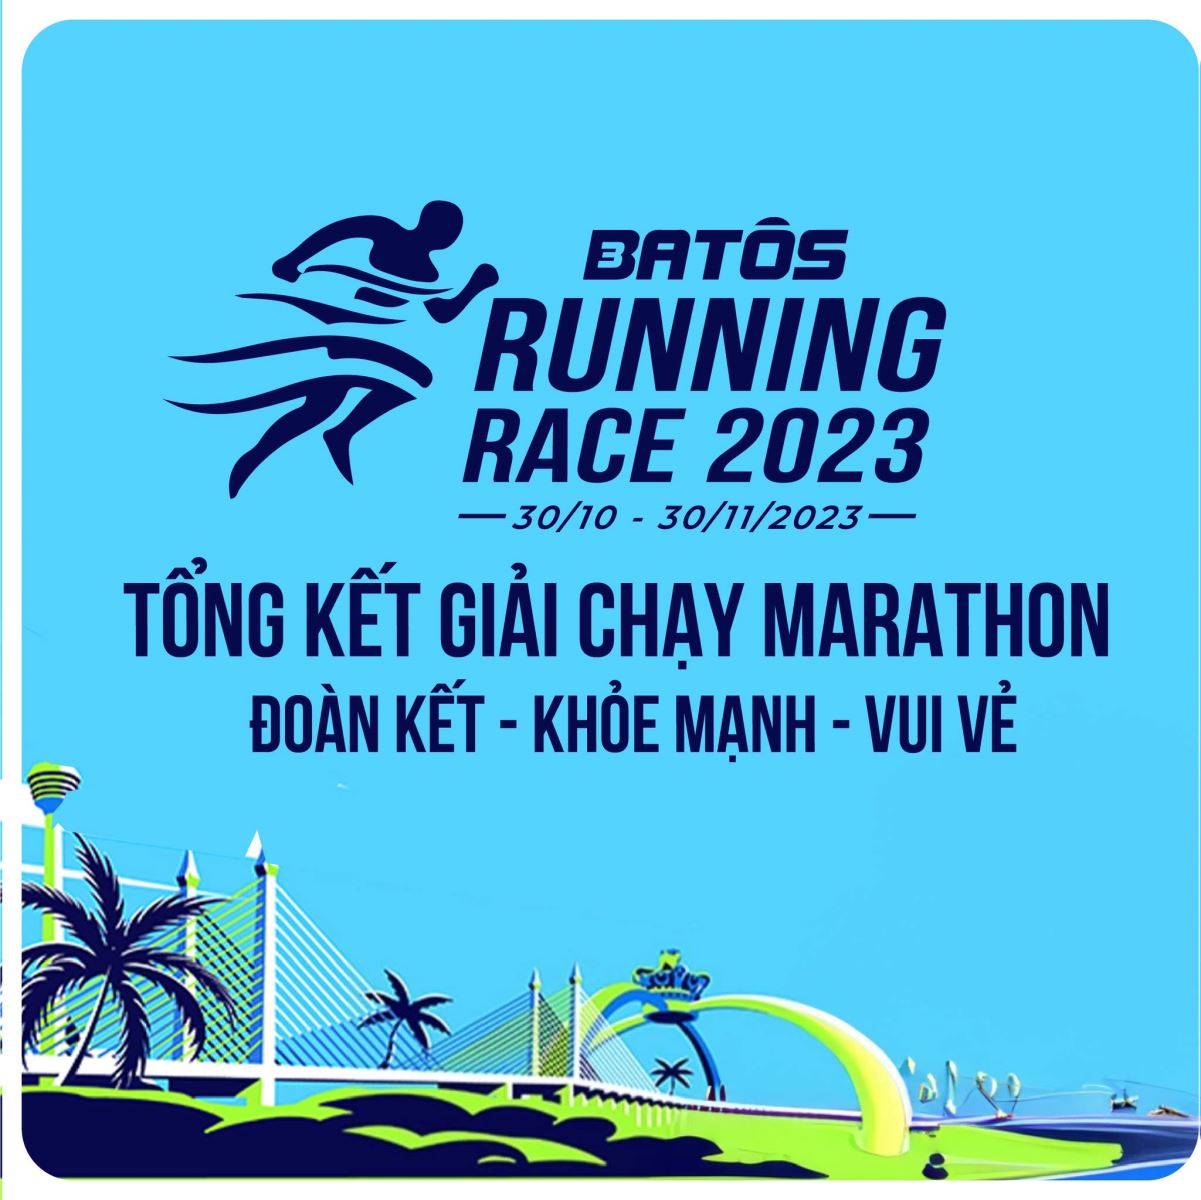 Tổng kết giải chạy Batos Running Race 2023